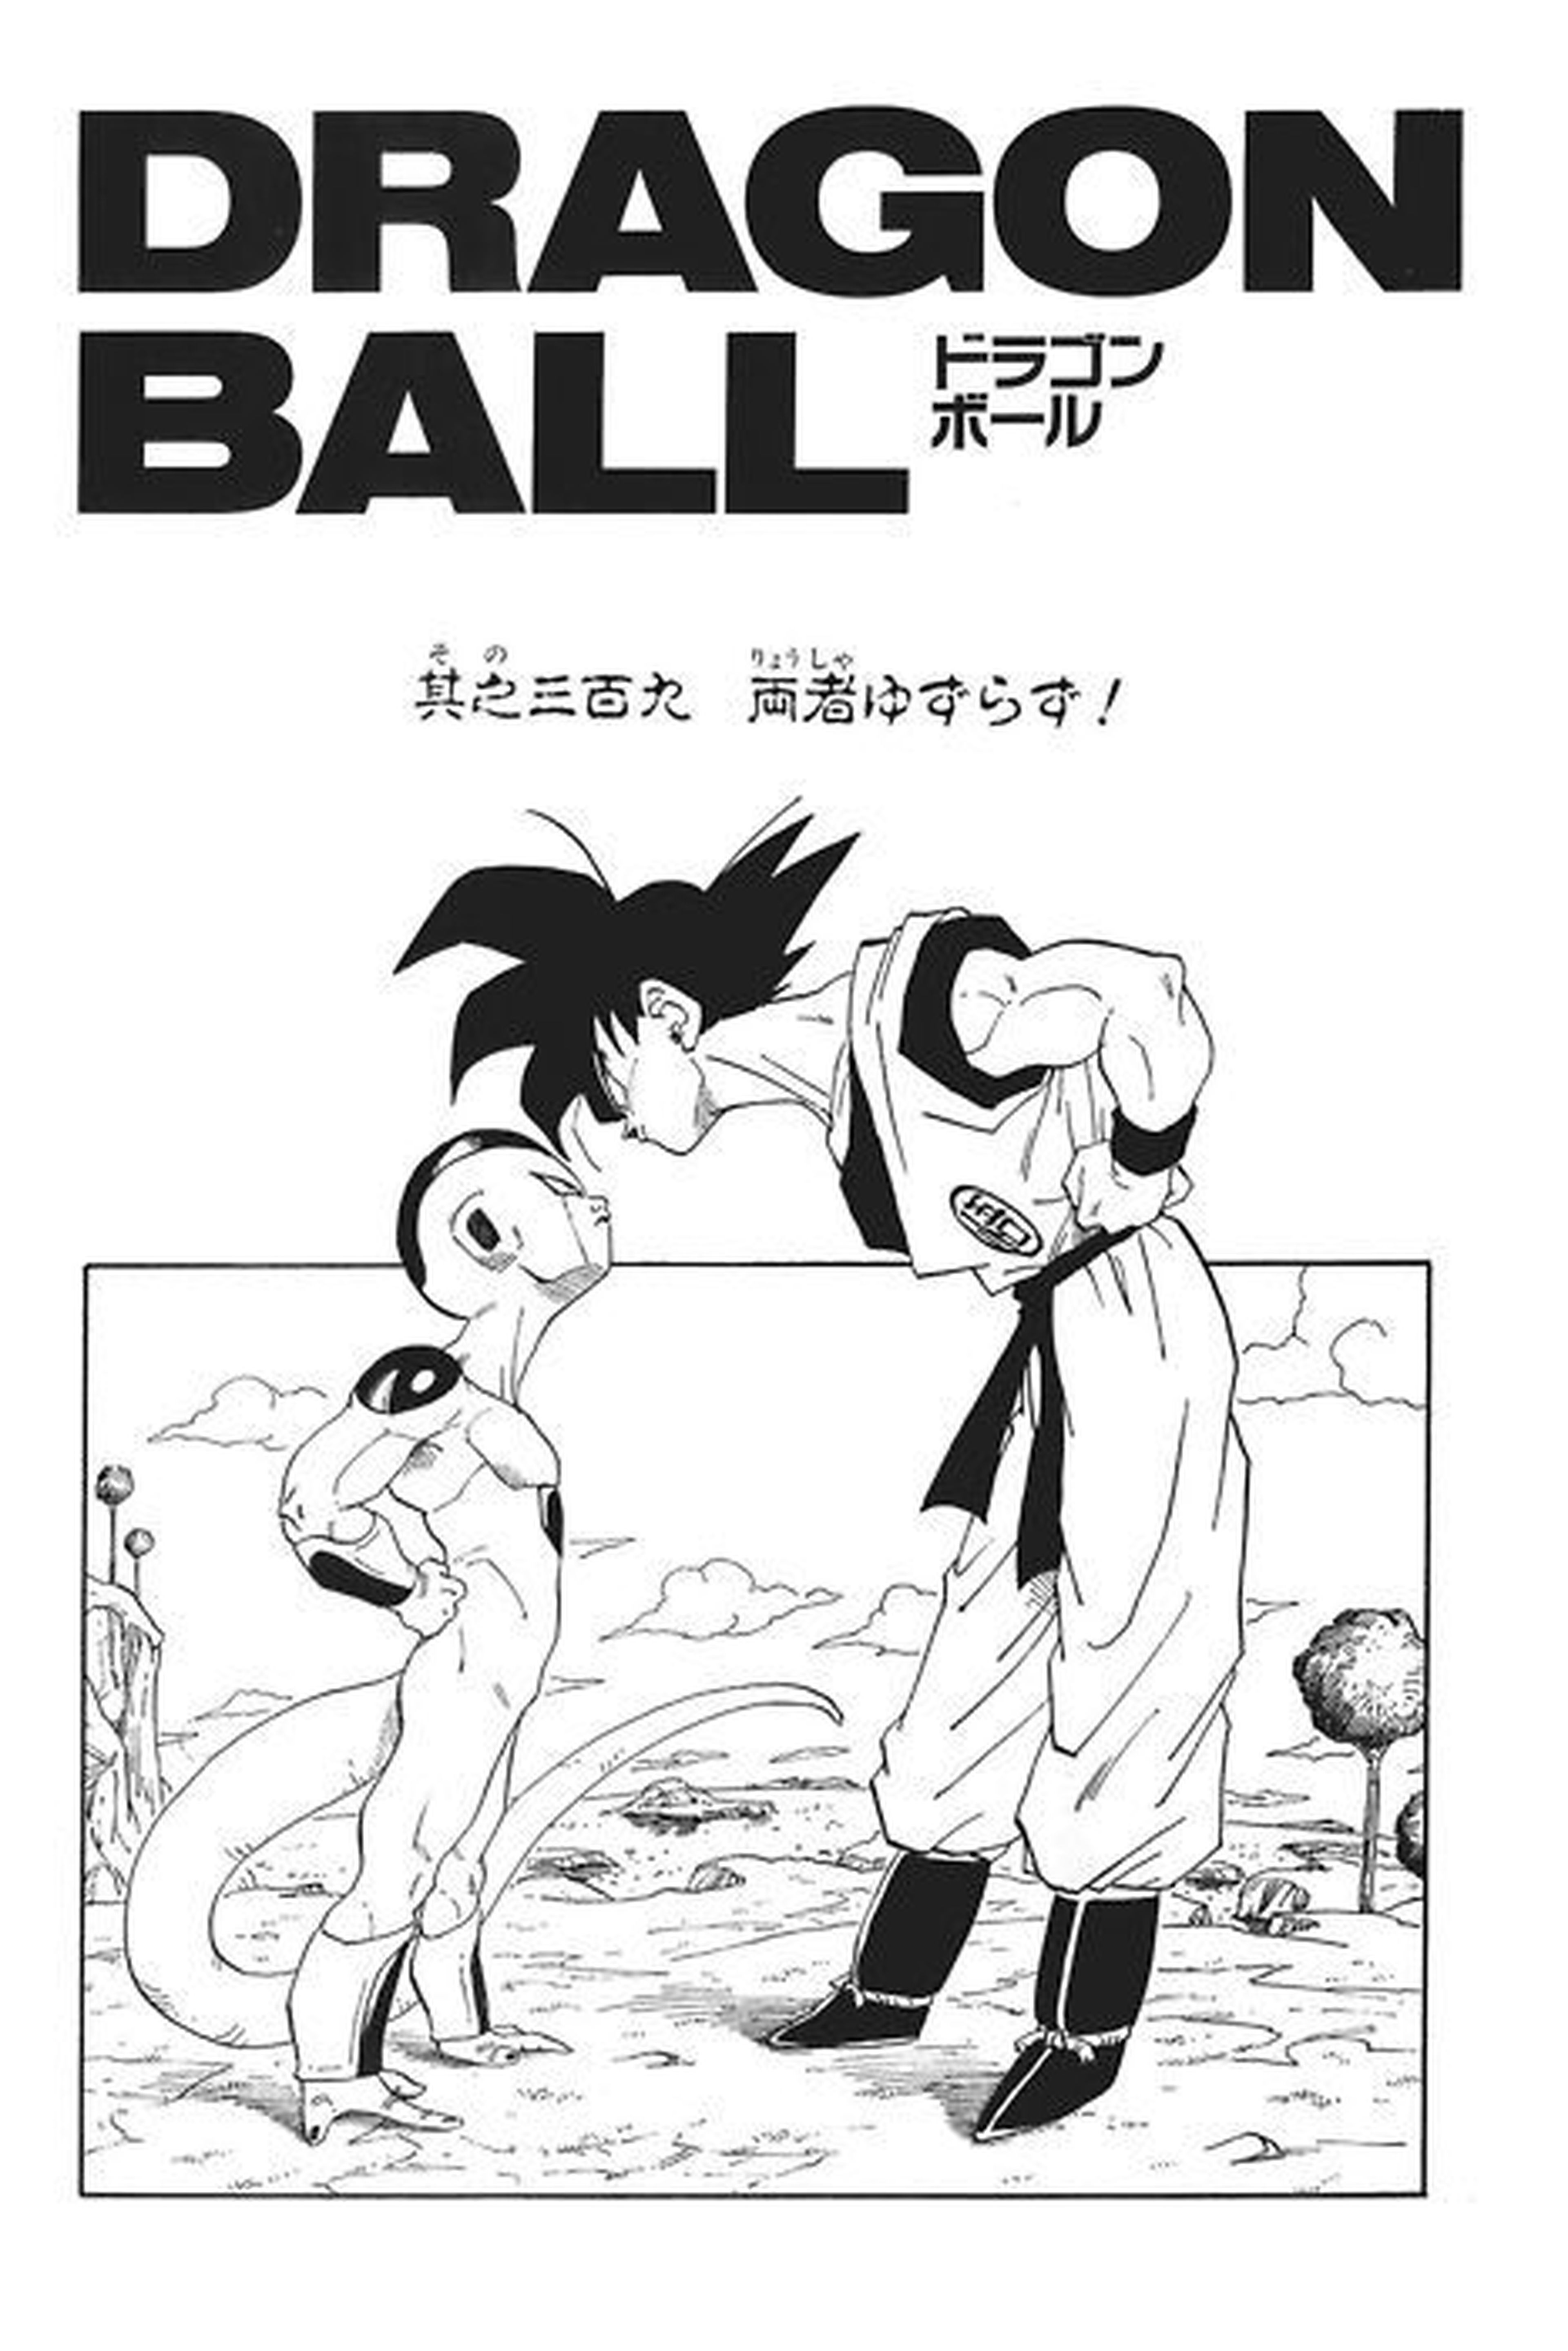 Dragon Ball - Los 10 mejores momentos del manga según los fans japoneses